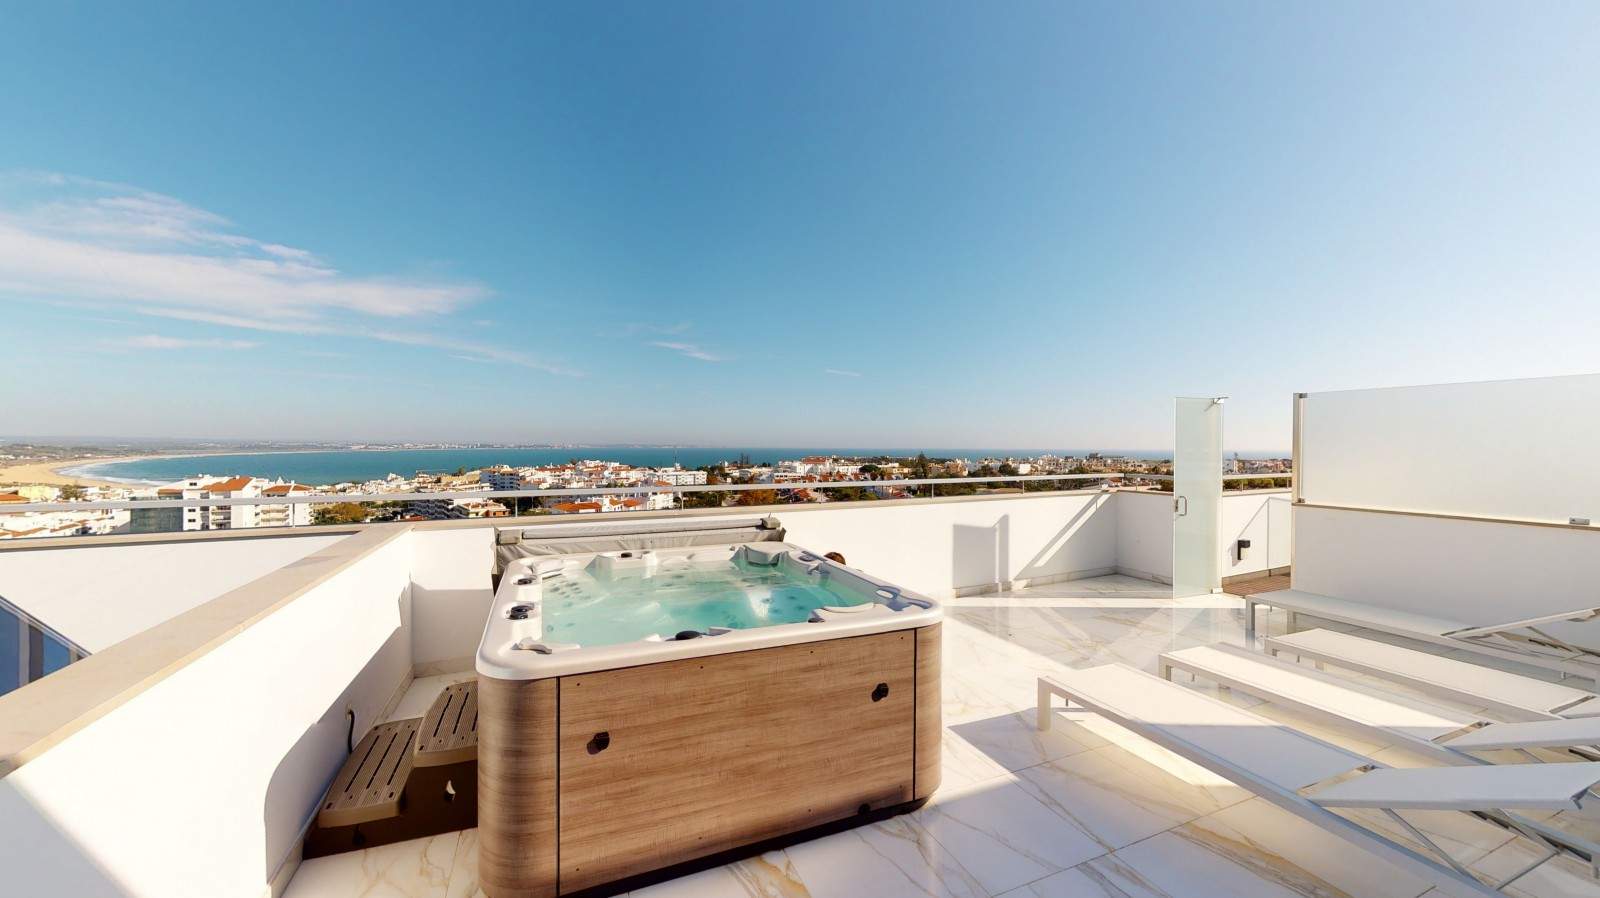 Venta de ático nuevo, piscina y vistas al mar, Lagos, Algarve,Portugal_208282